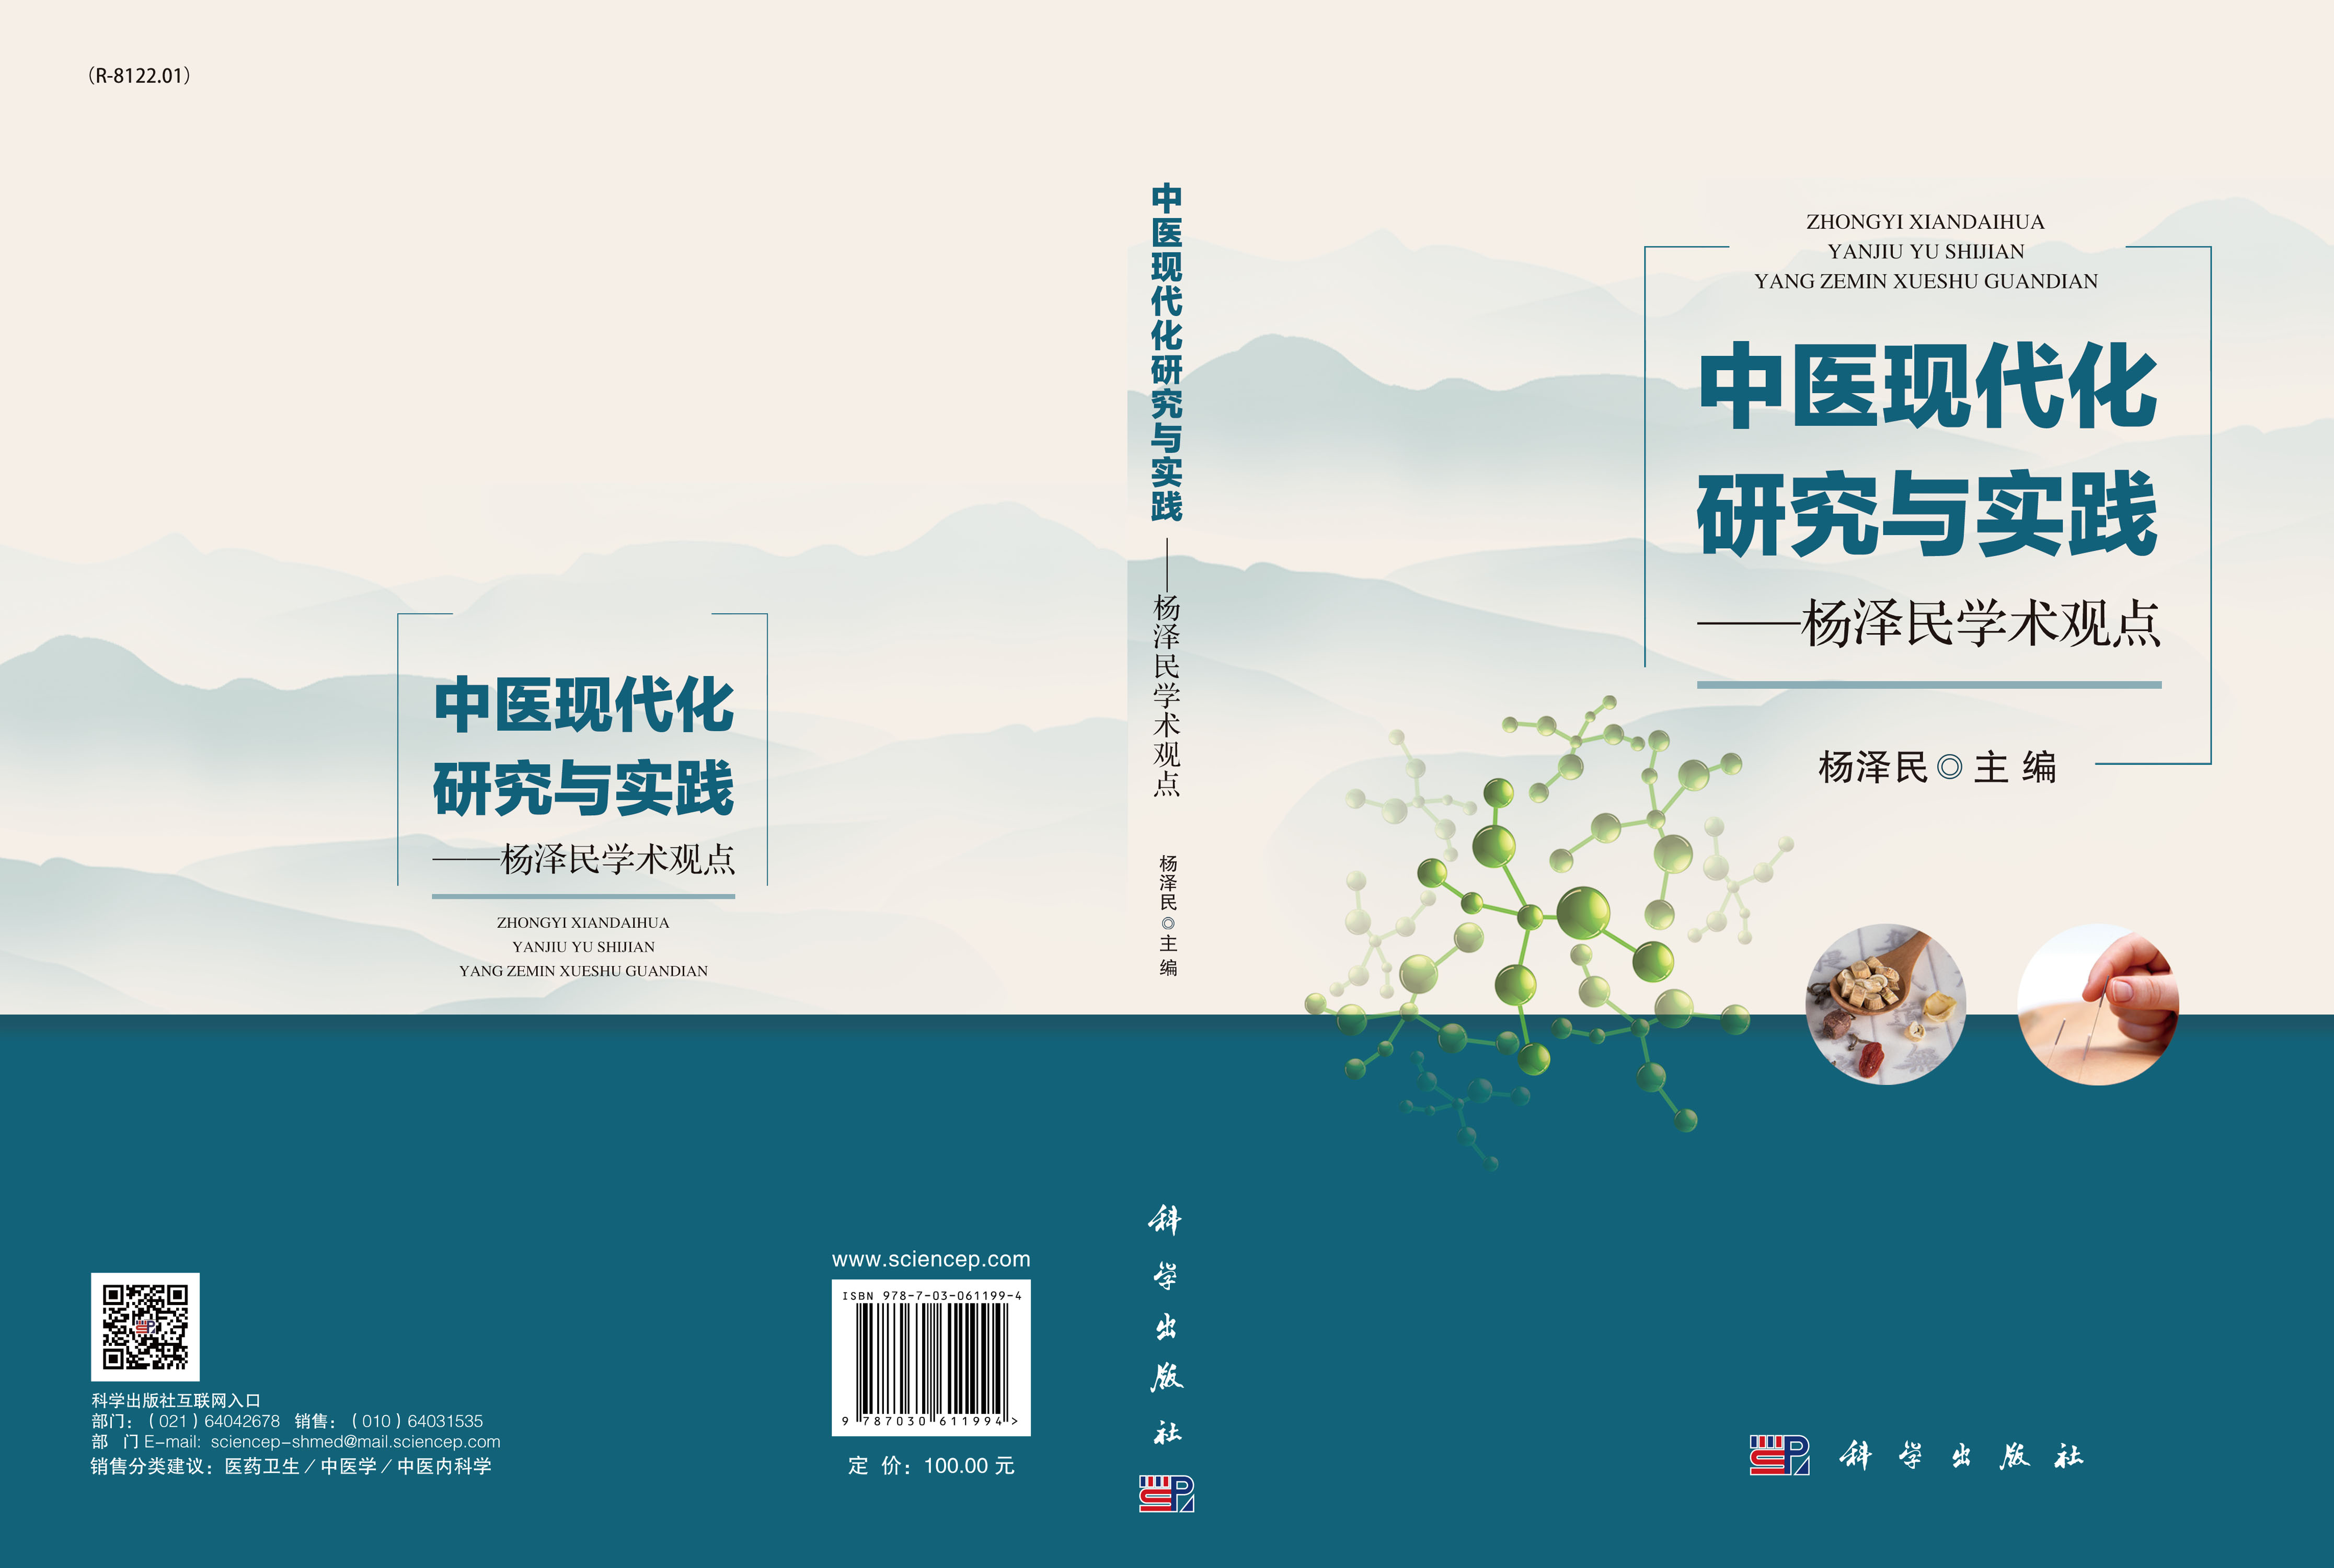 中医现代化研究与实践——杨泽民学术观点